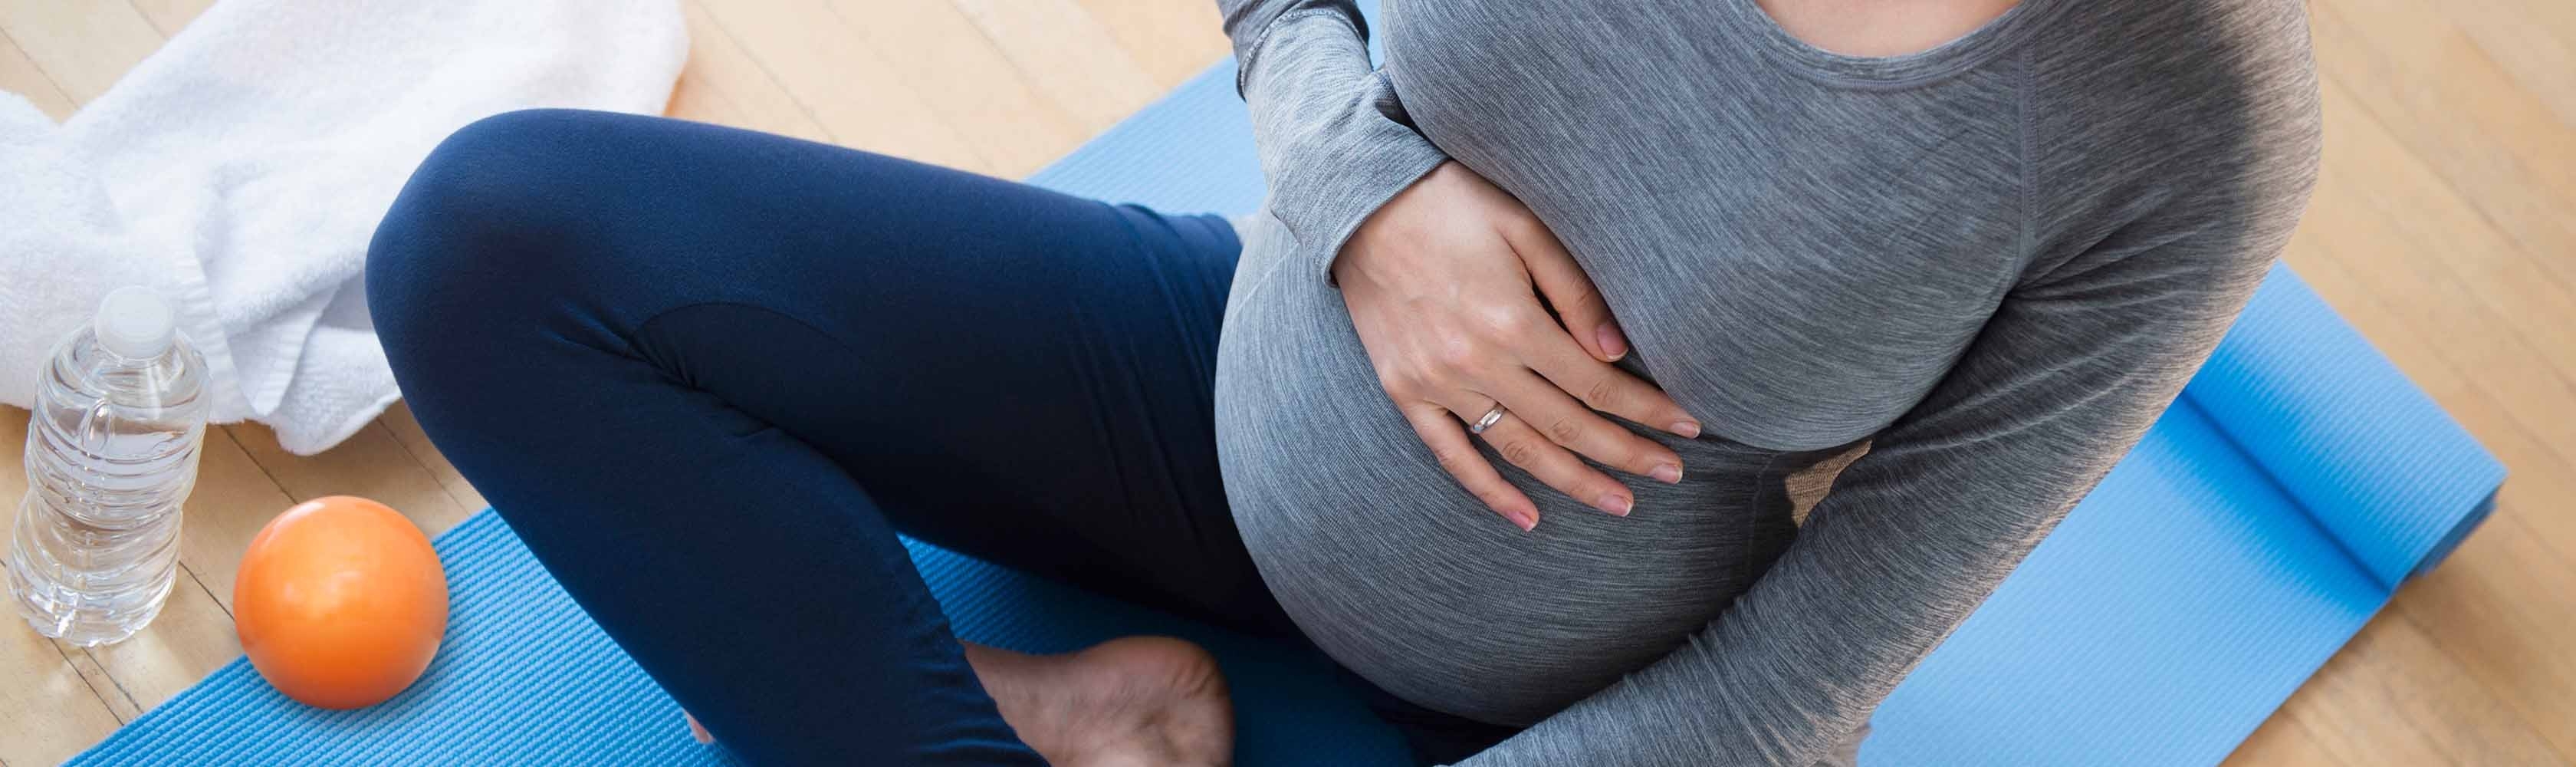 Fit bleiben während der Schwangerschaft - Werdende Mutter auf Yogamatte.